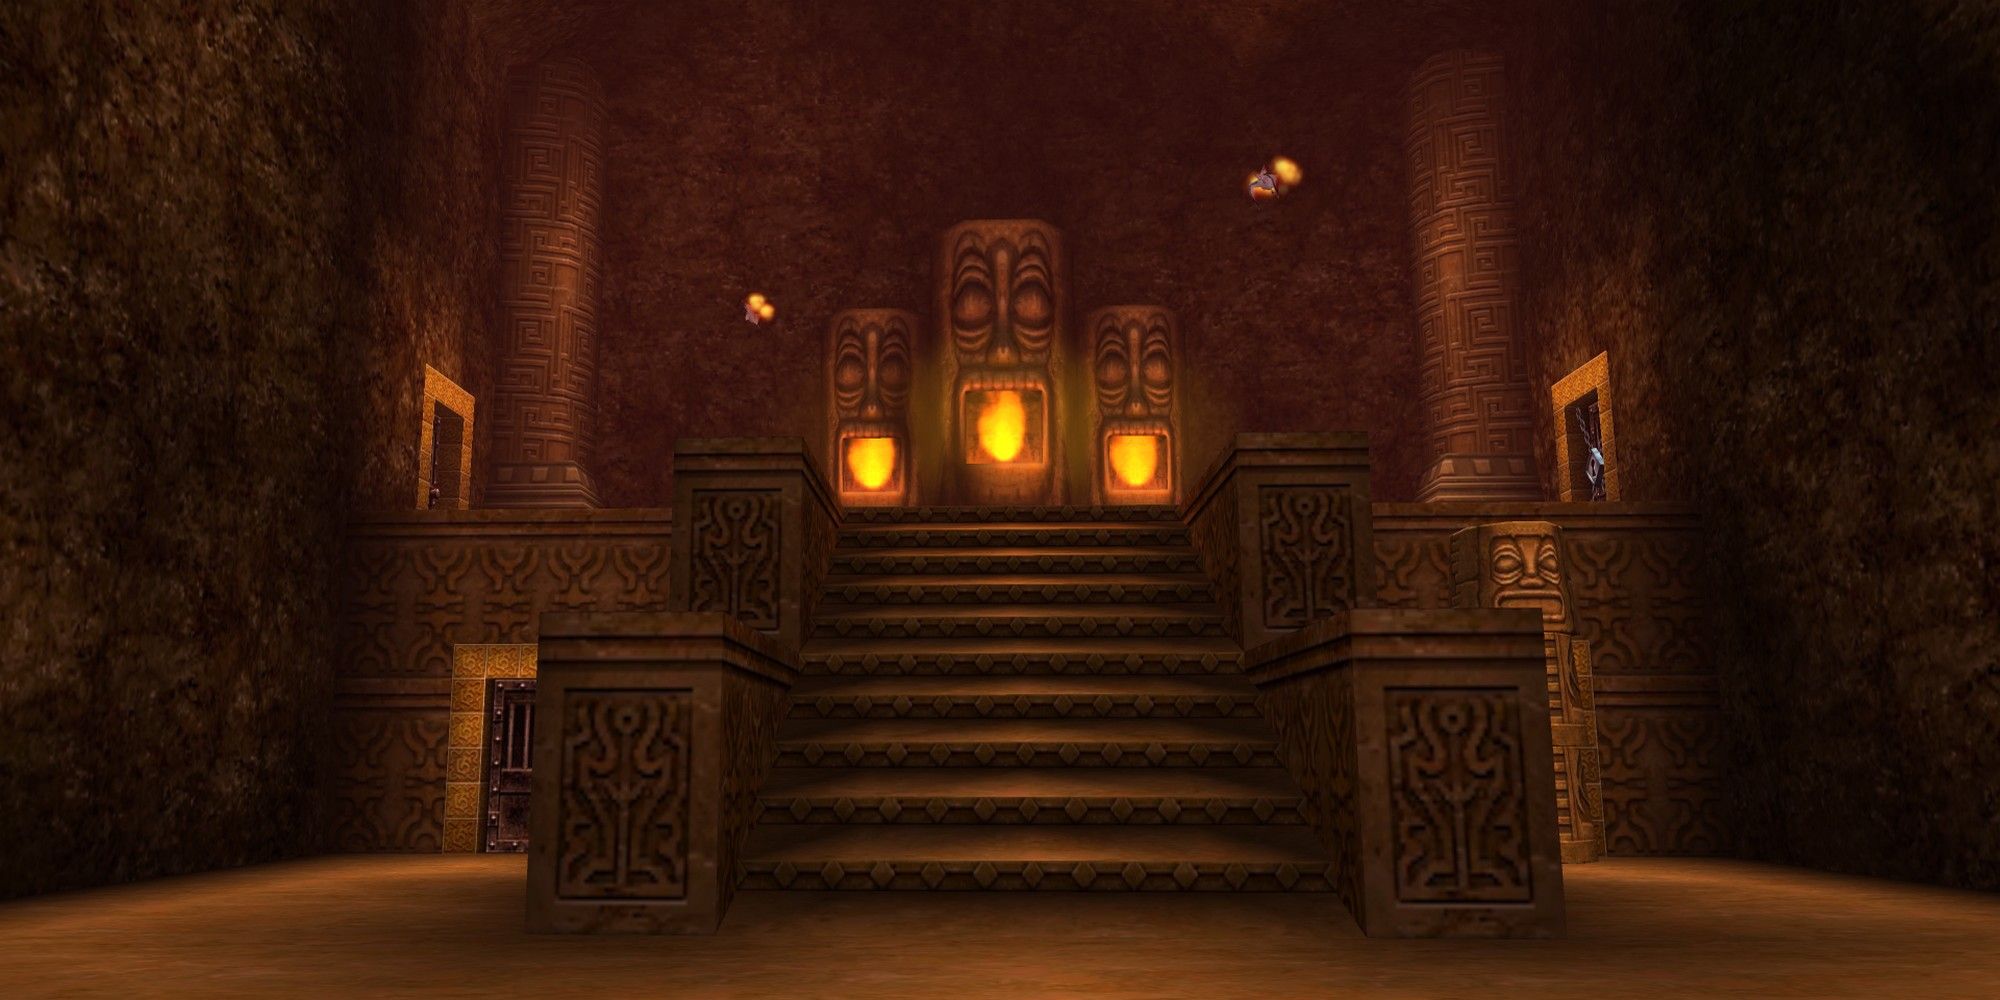 fire temple ocarina of time entrance legend of zelda dungeons ranked best zelda dungeons